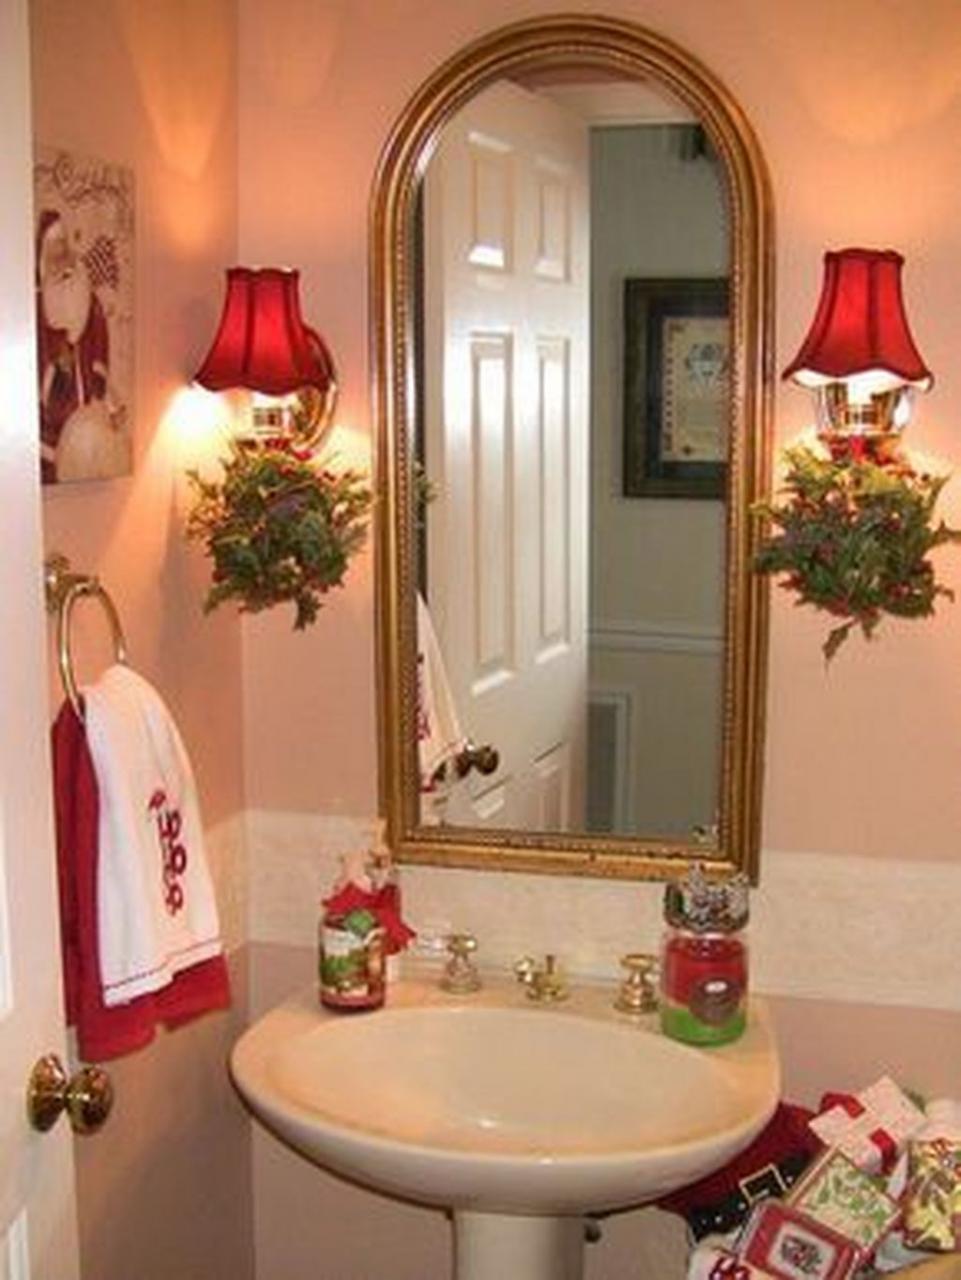 38 DIY Christmas Decorations Ideas For Bathroom Christmas bathroom